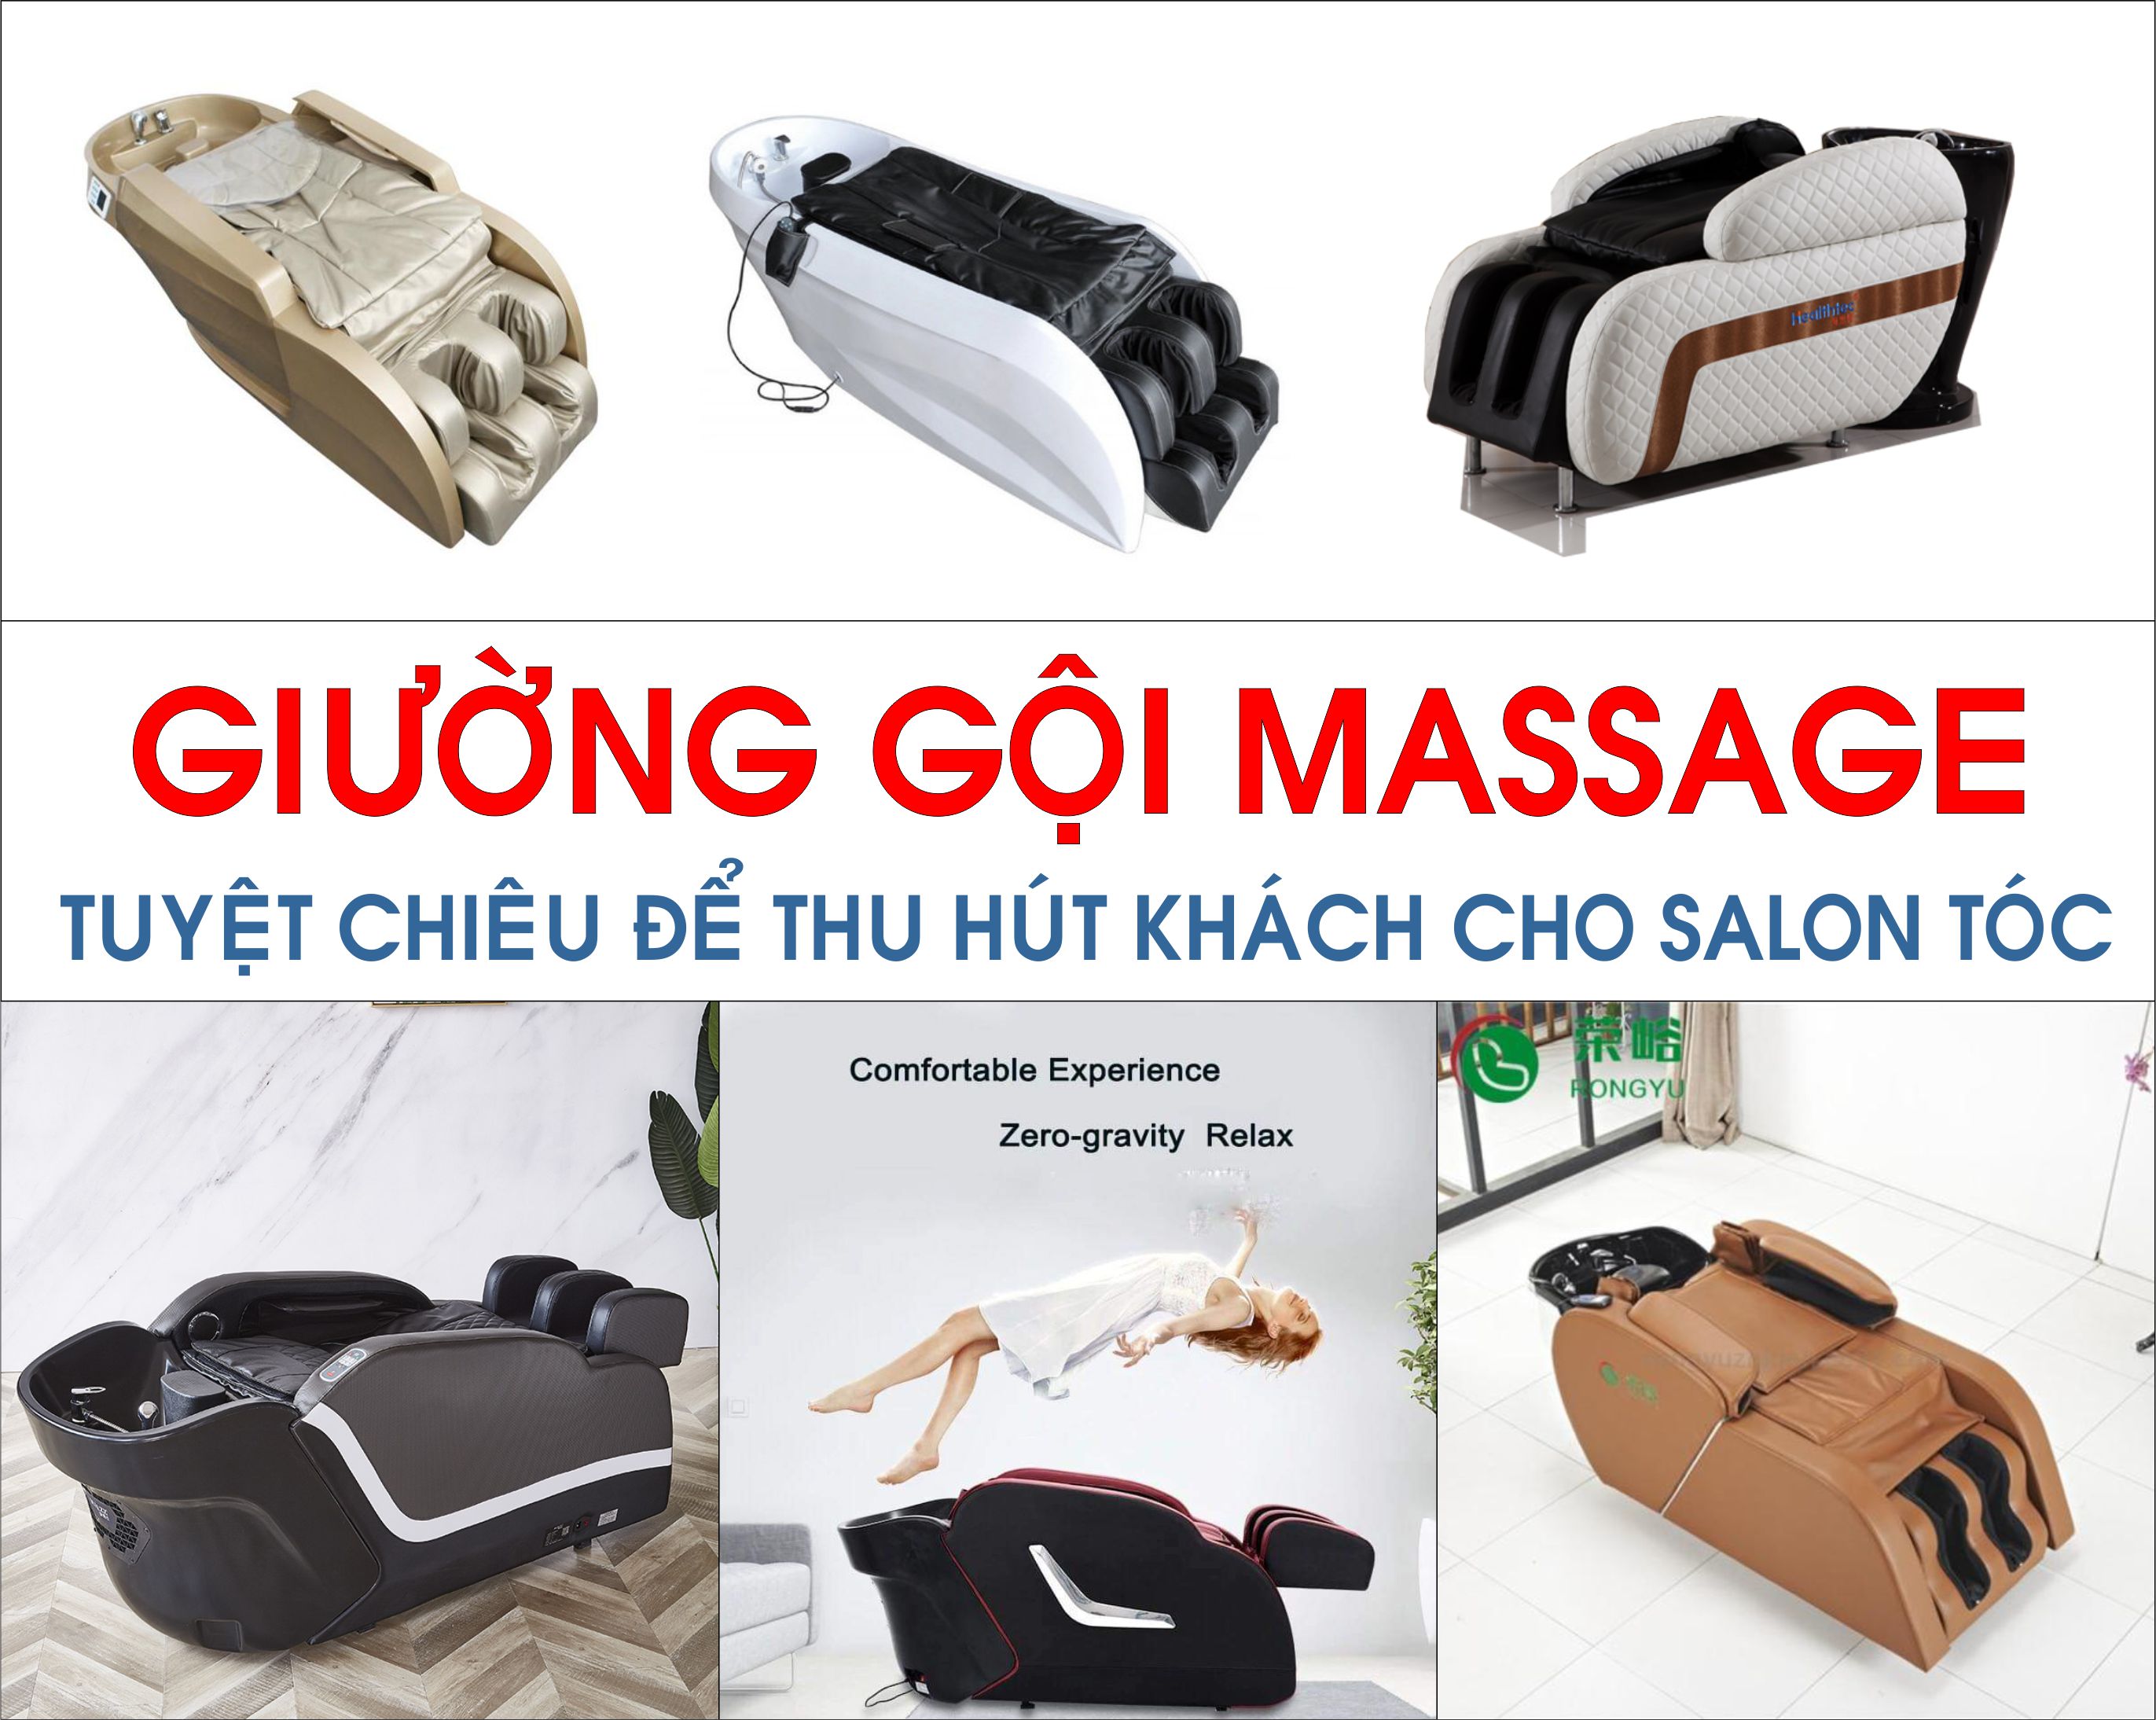 giuong-goi-co-massage-tuyet-chieu-de-thu-hut-khach-cho-salon-toc